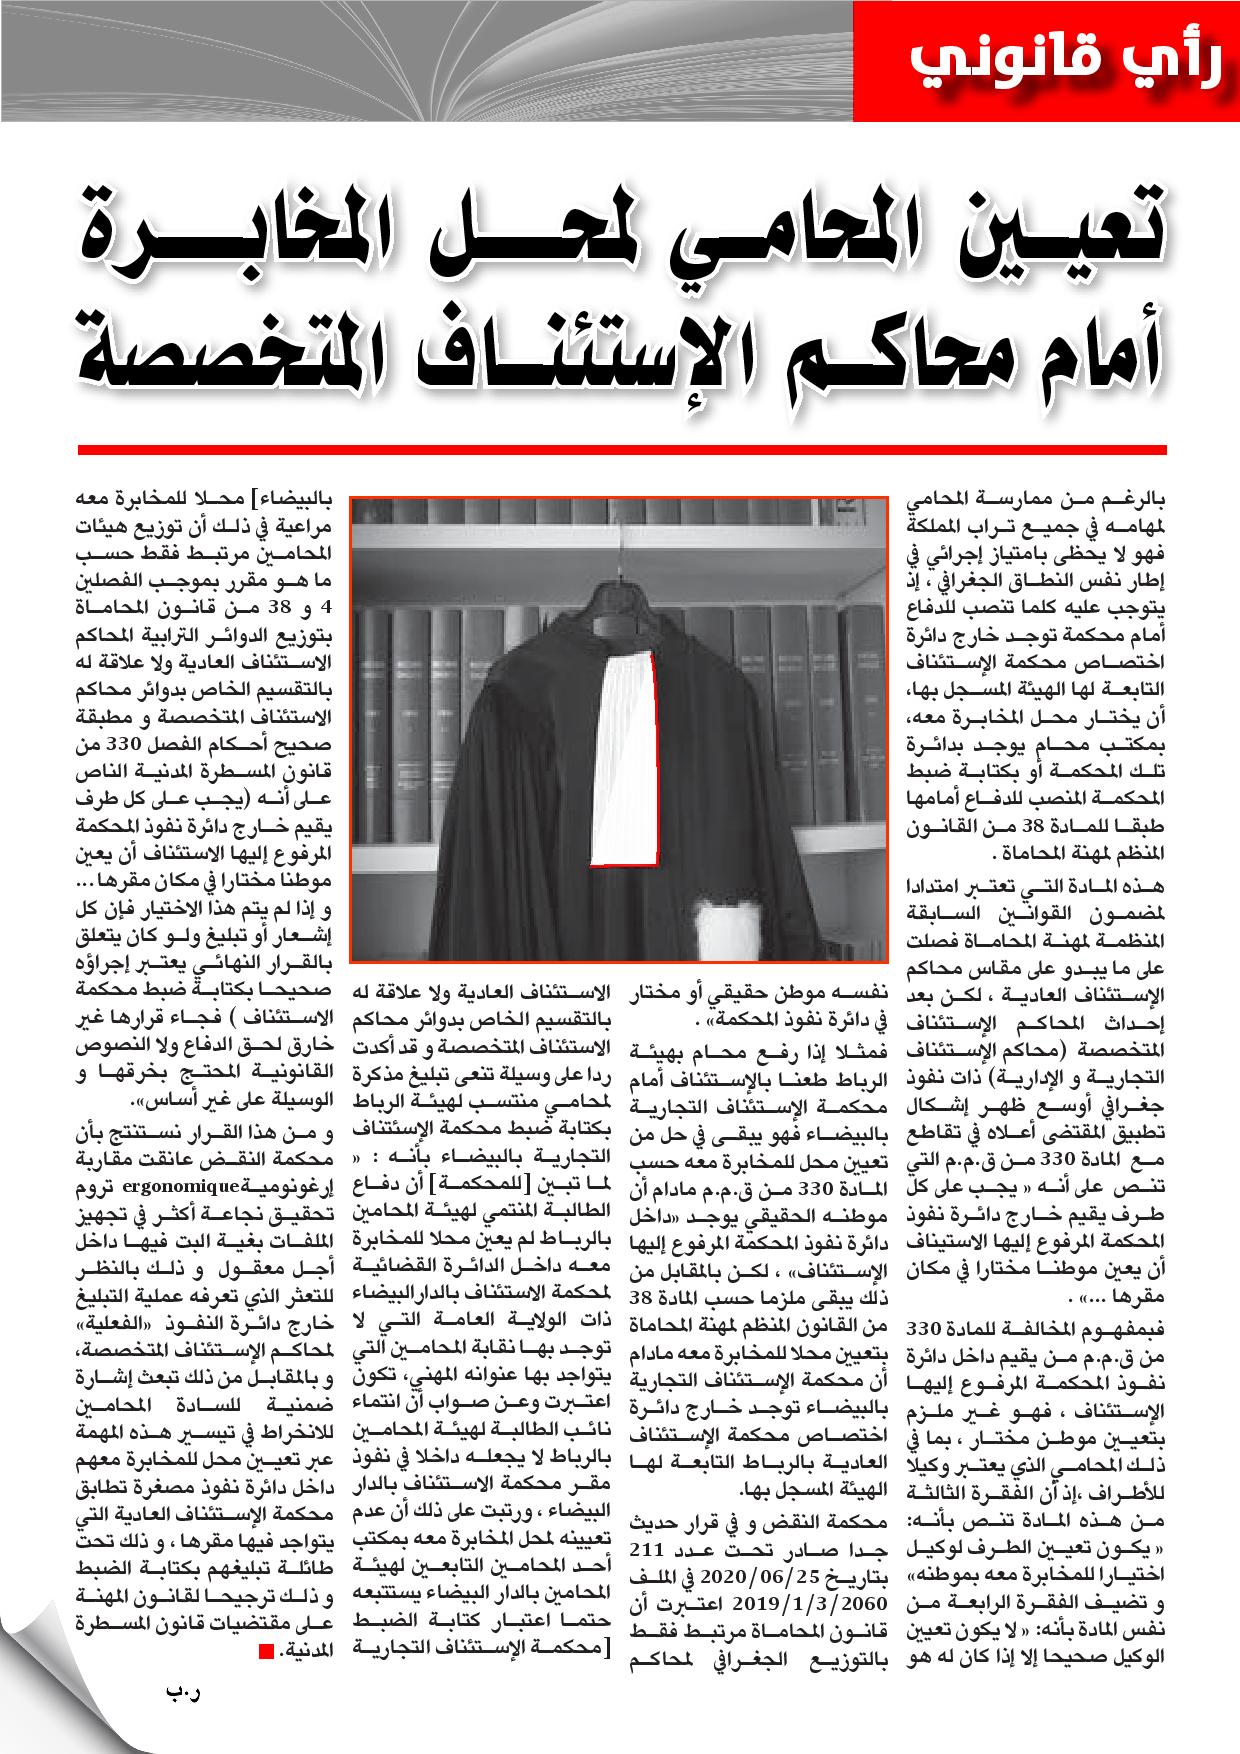 تعيين المحامي لمحل المخابرة أمام محاكم الإستئناف المتخصصة للأستاذ رضى بلحسين